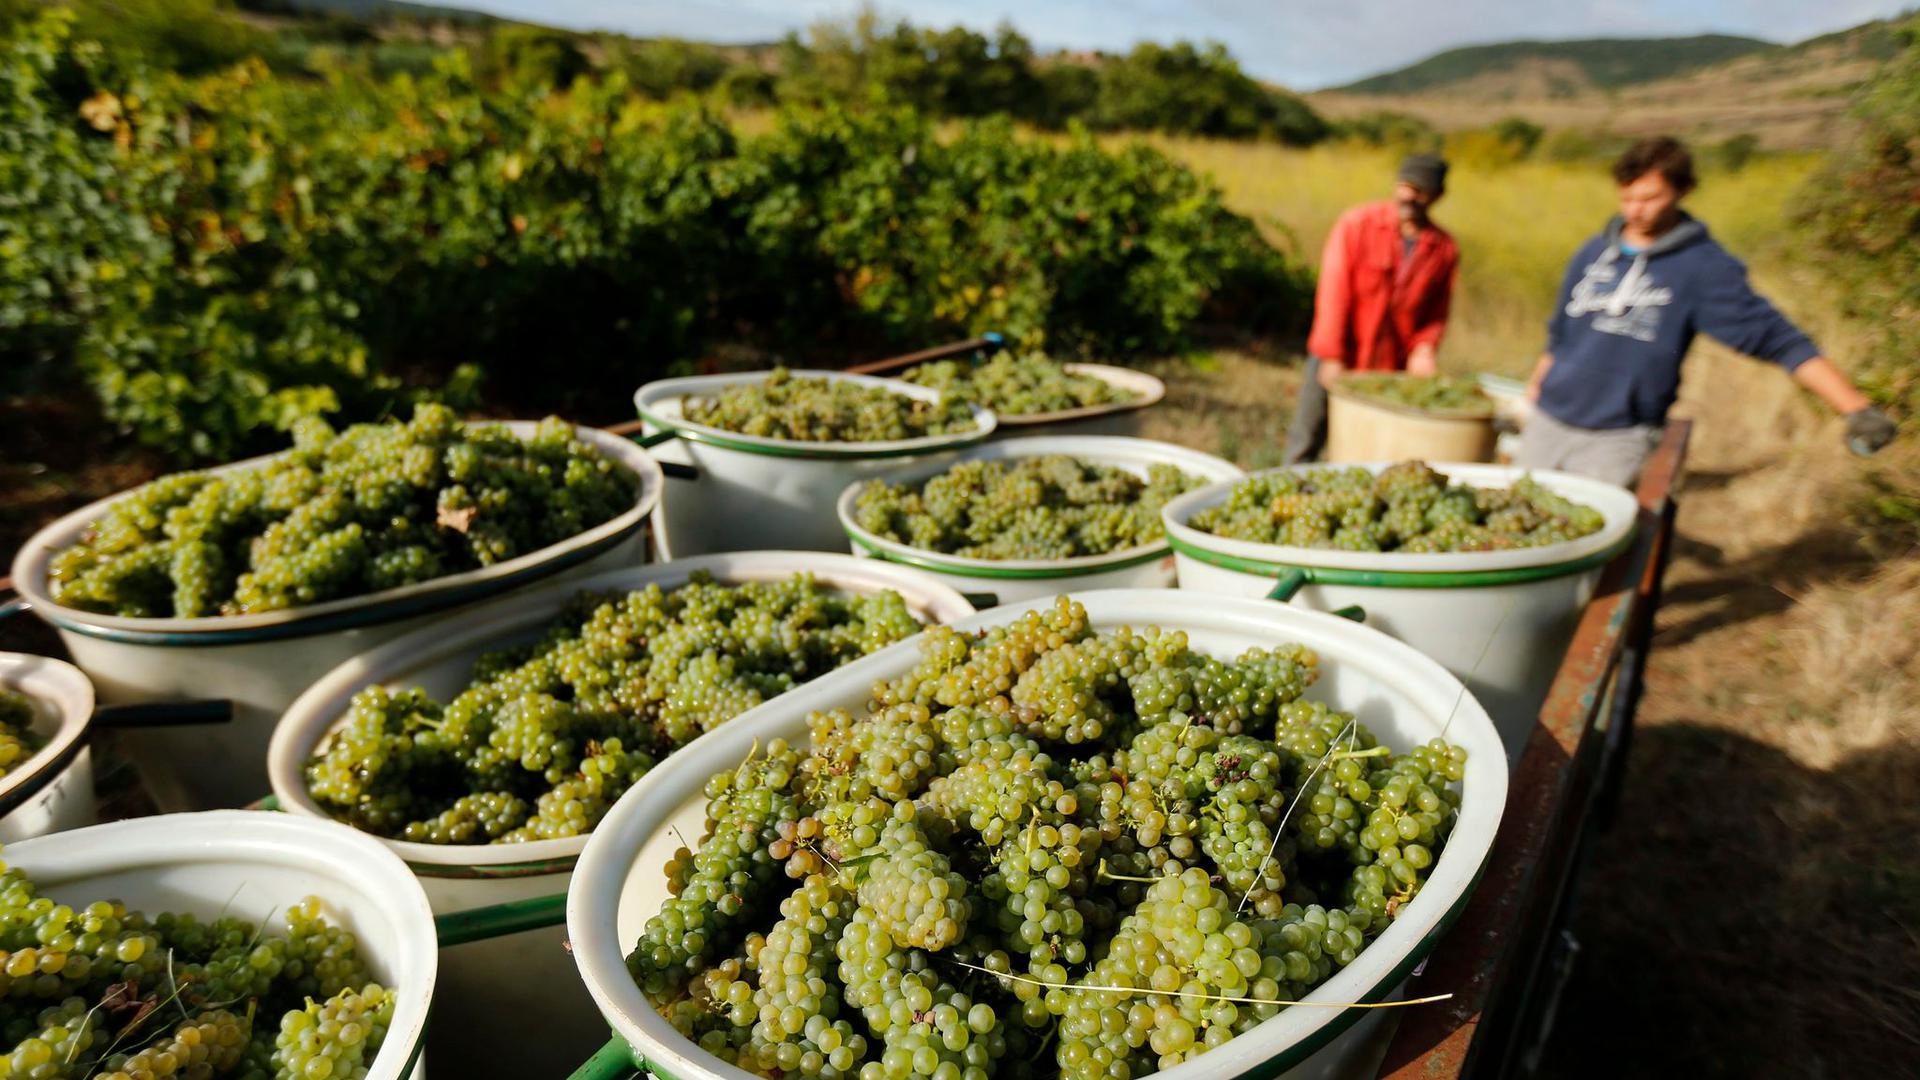 Weinlese von Bio-Trauben in Octon im Süden Frankreichs. Wegen der Hitze musste nun früher als gewöhnlich mit der Weinlese begonnen werden.